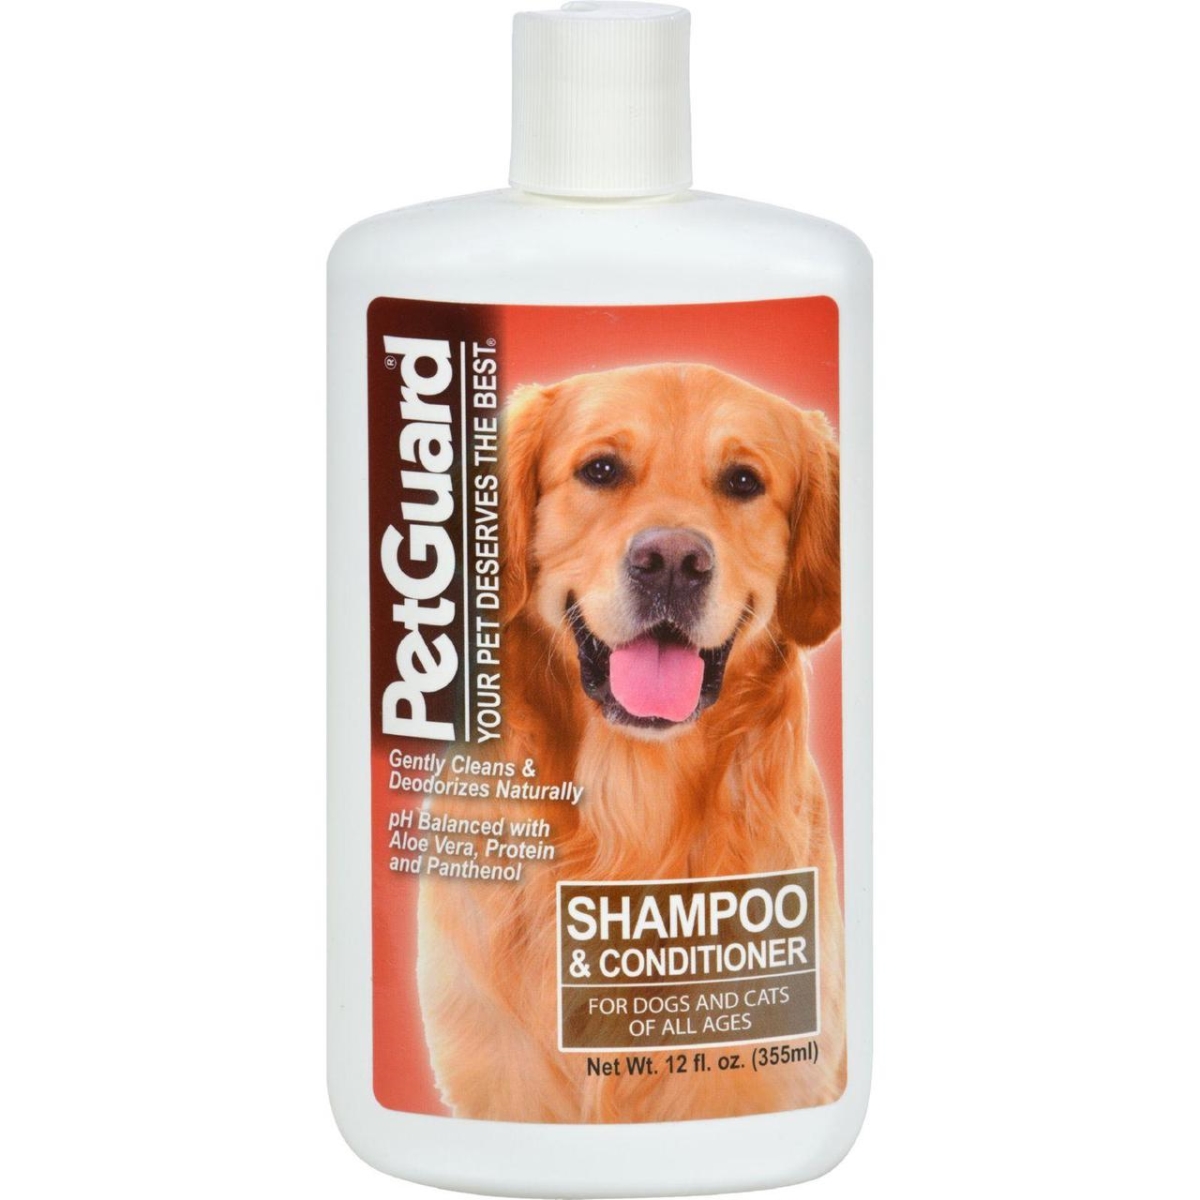 Petguard Hg0709907 12 Fl Oz Shampoo & Conditioner For Dogs